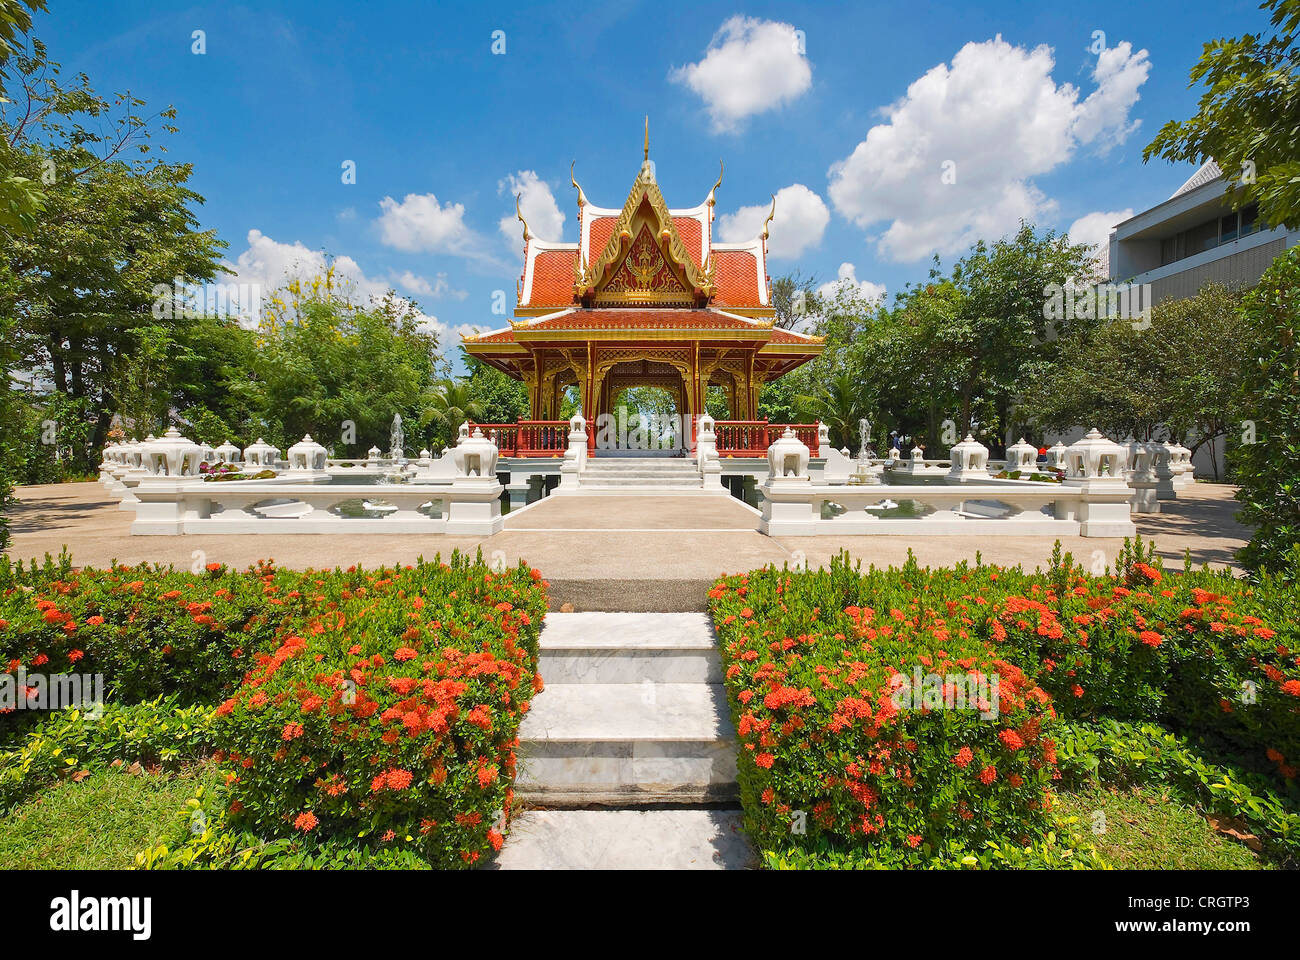 Thailand Culturel Centre, Thailand, Bangkok Stock Photo